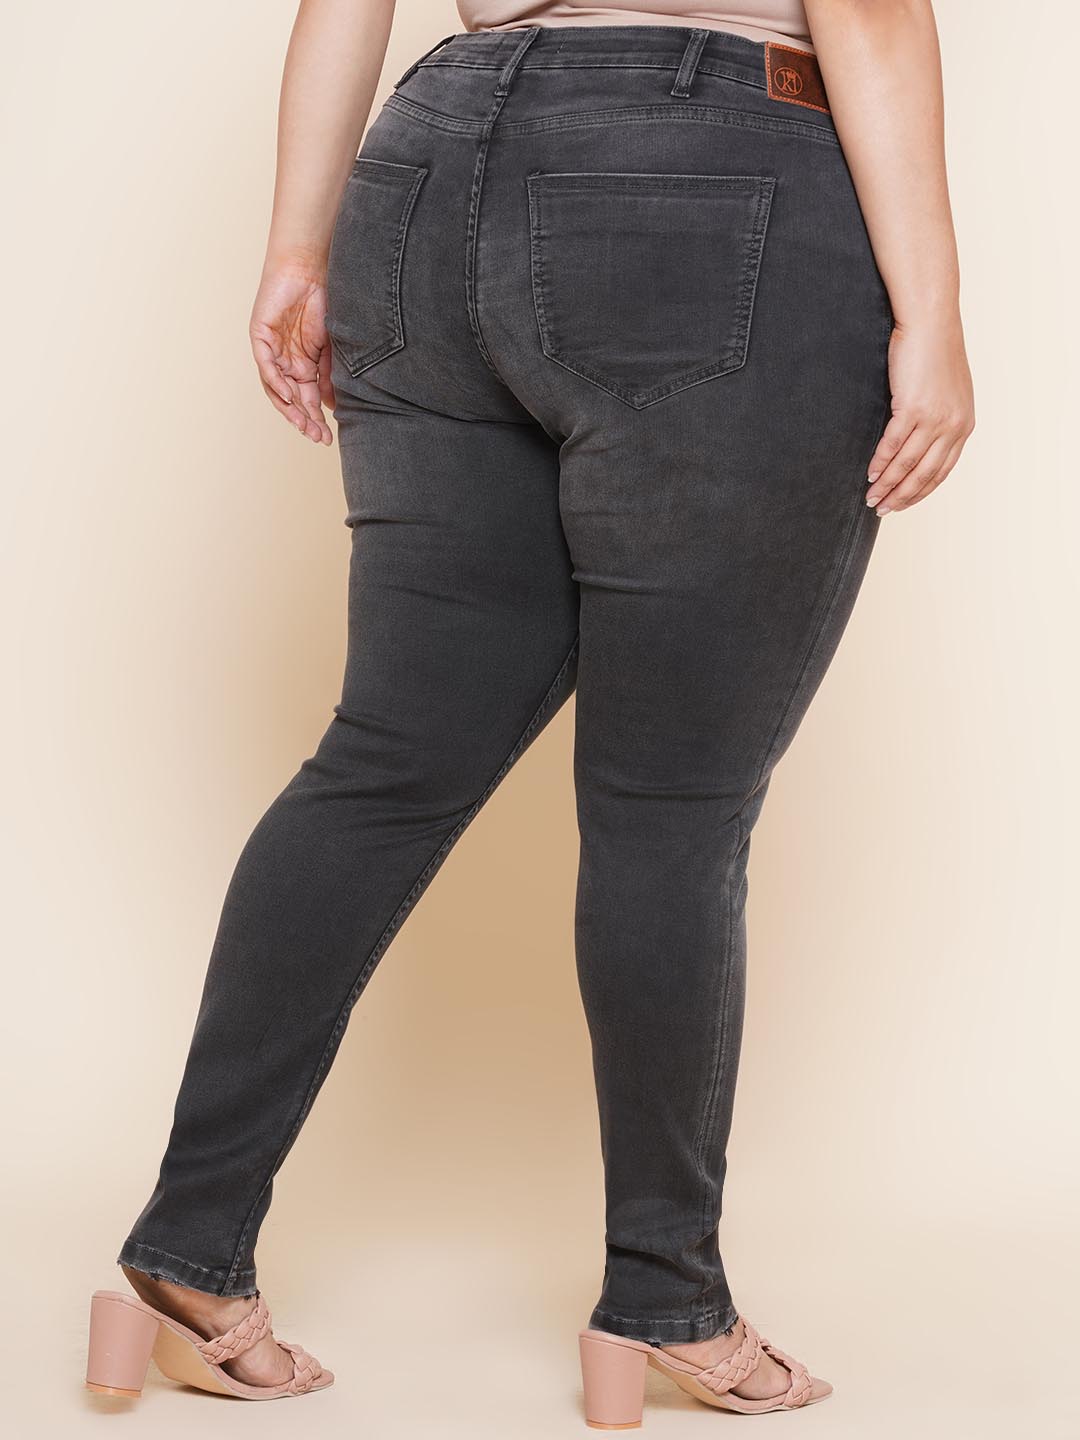 bottomwear_kiaahvi/jeans/KIJ6002/kij6002-5.jpg